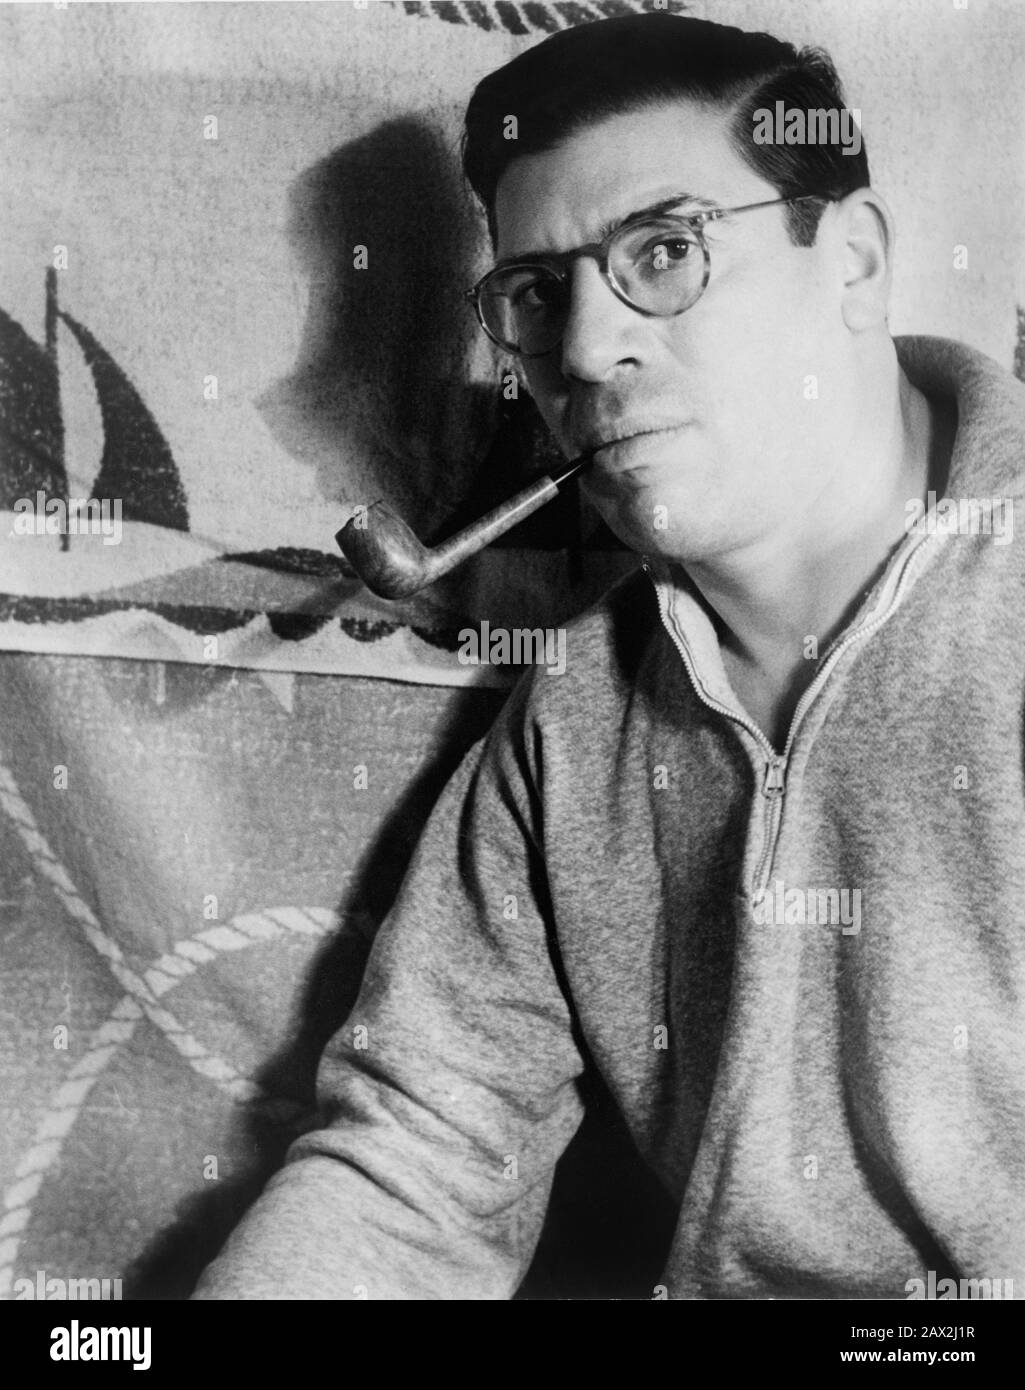 1937, États-Unis : Paul William Gallico (1897 – 1976) a été un romancier américain réussi, un écrivain de courte histoire et de sport. Bon nombre de ses œuvres ont été adaptées pour les images de mouvement. Il est peut-être mieux rappelé pour La OIE des neiges , son seul vrai succès critique, et pour le roman L'aventure Poseidon , principalement par l'adaptation du film de 1972 . Photo de Carl Van Vechten ( 1880 - 1964 ) Gallico est né à New York. Son père était le célèbre pianiste de concert italien, compositeur et professeur de musique Paolo Gallico (Trieste, 1868 - New York, 1955) et sa mère, Hortense Erlich, venait d'Autriche ; ils Banque D'Images